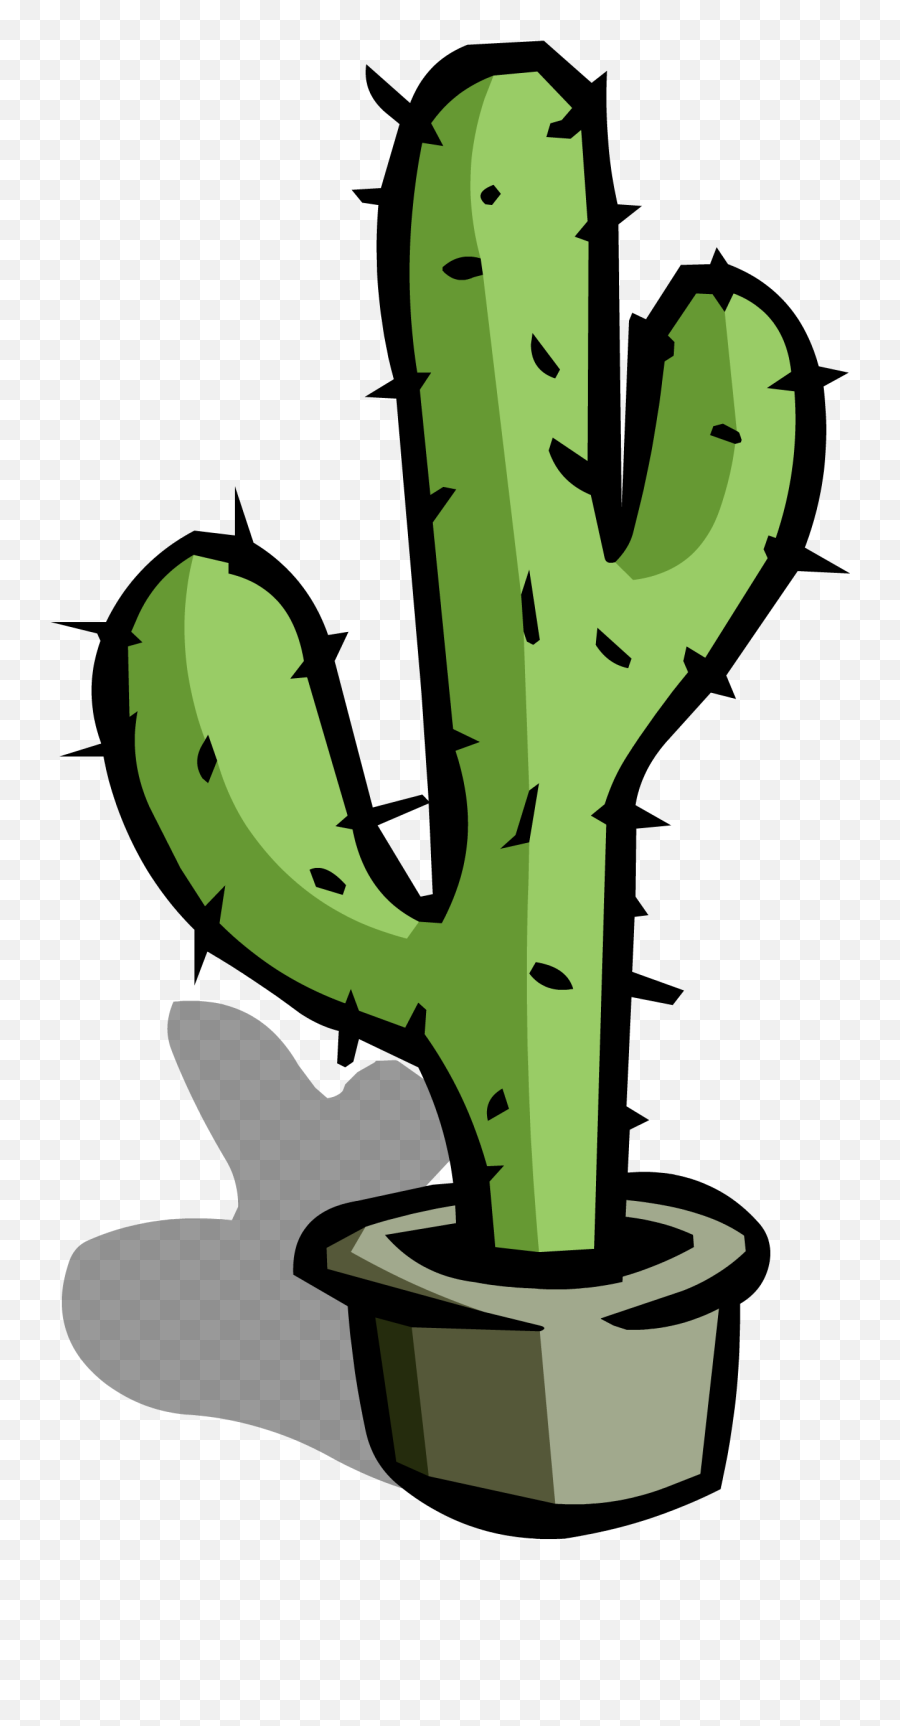 Cartoon Cactus Png - Cartoon Cactus Png Cute Cactus Icon Cartoon Cactus Png,Cactus Transparent Background